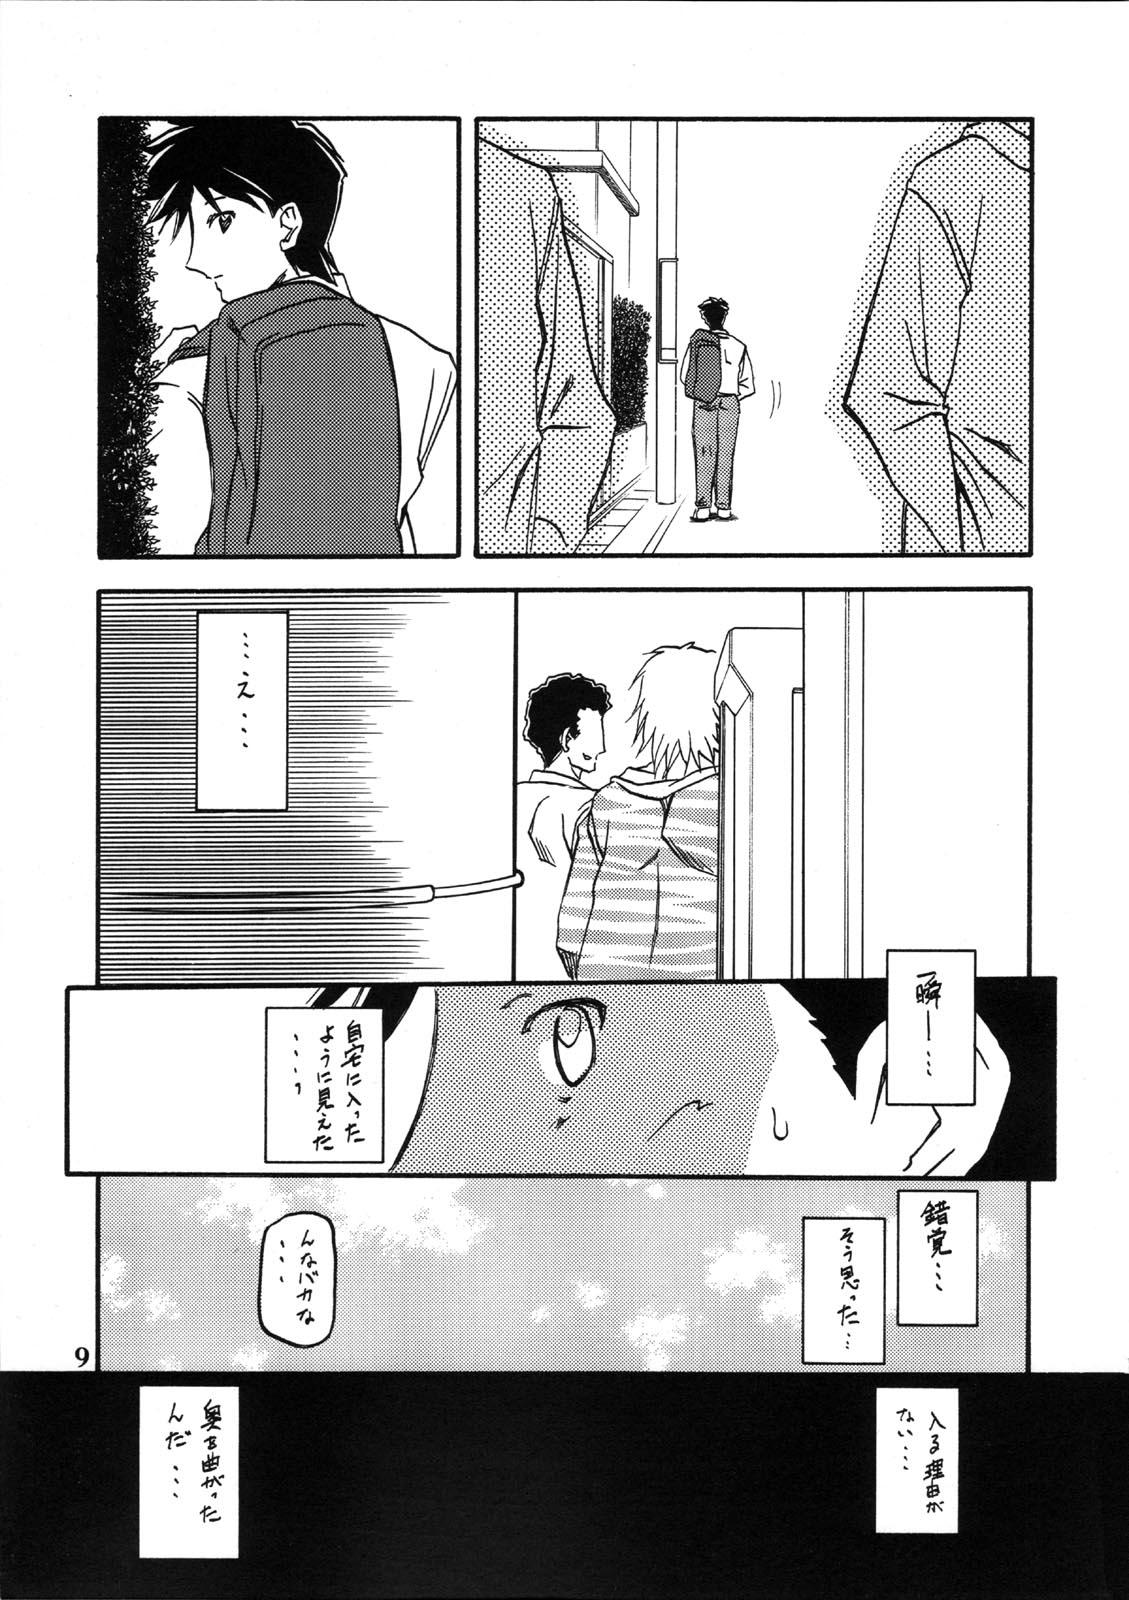 Futanari Akebi no Mi - Miwako - Akebi no mi Fuck - Page 9